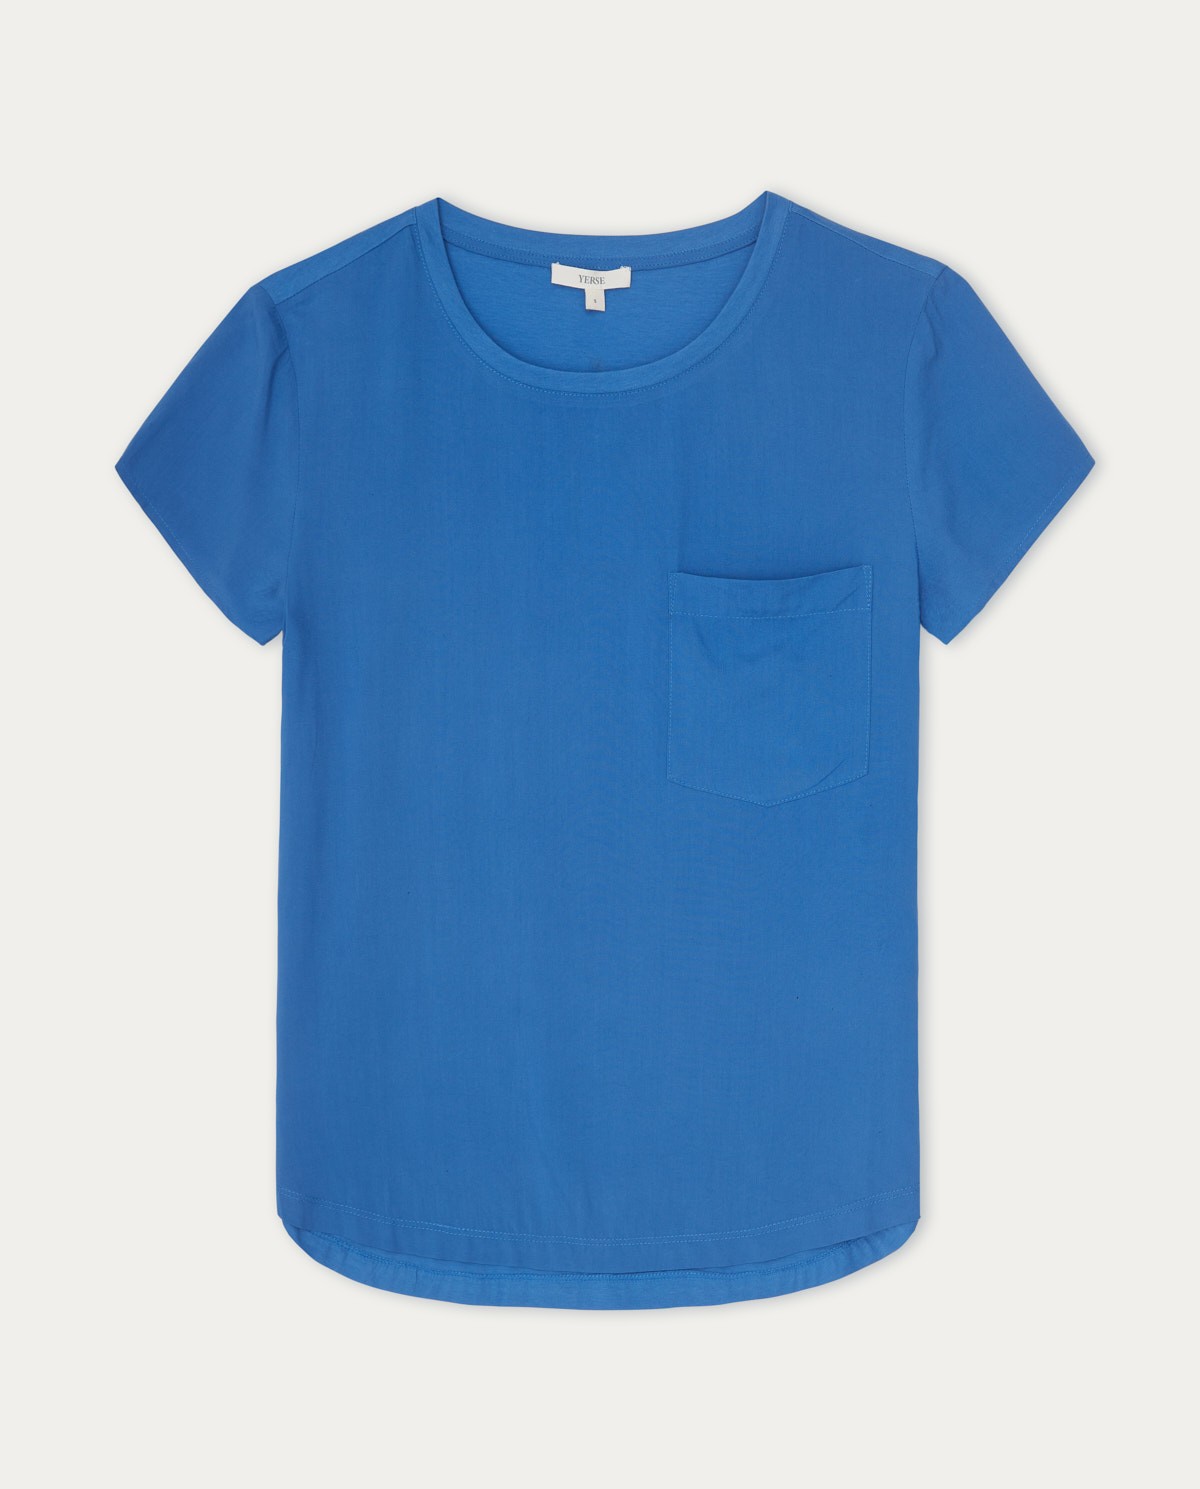 Flowy t-shirt pocket Blue 5